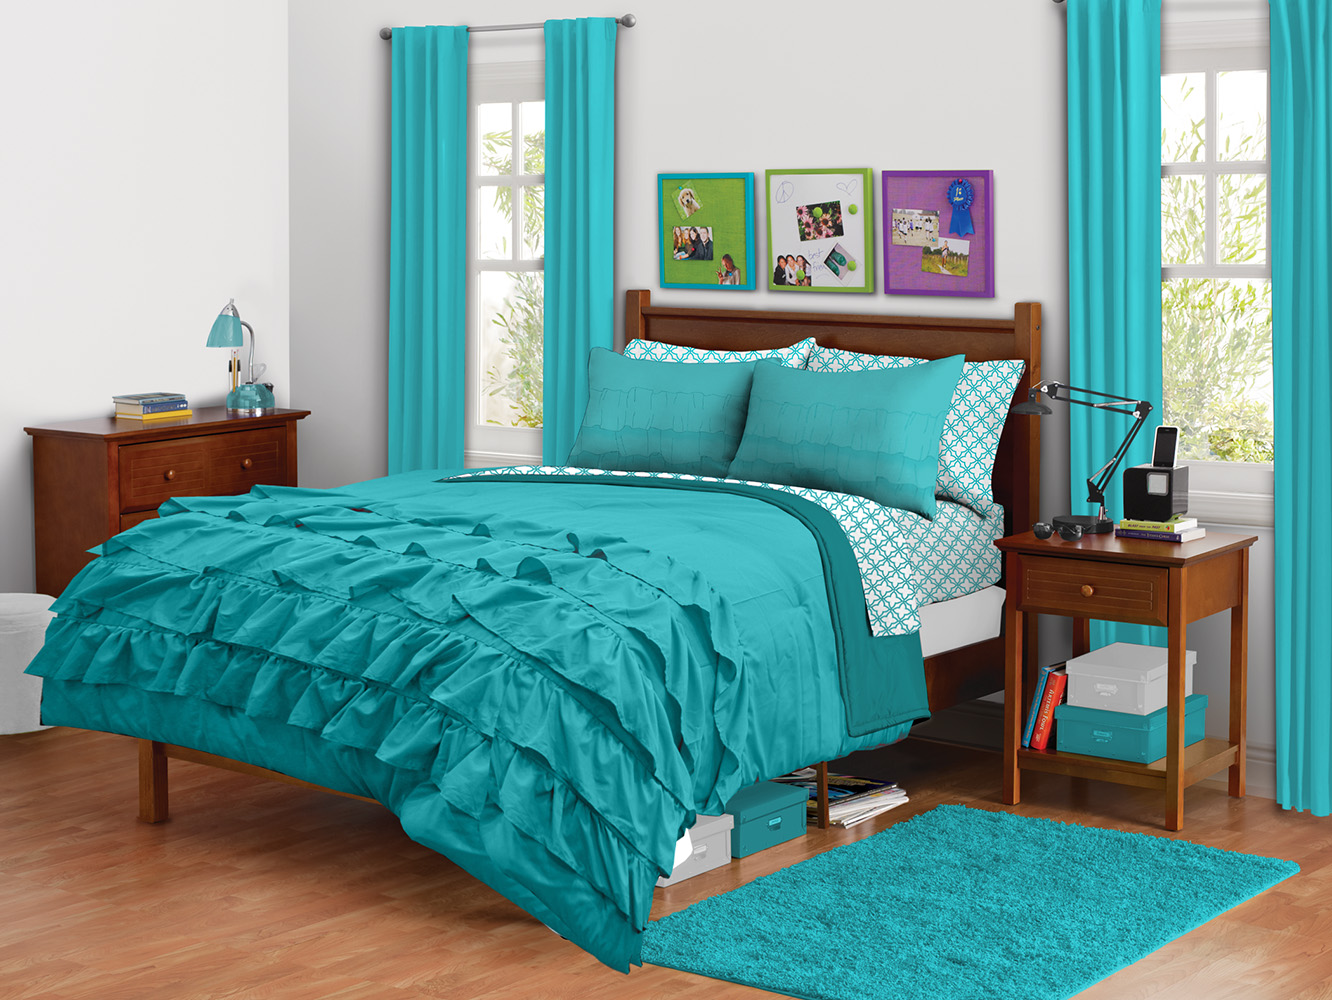 Free Download Comforter Set Turq Bedroom Accessories Walmart